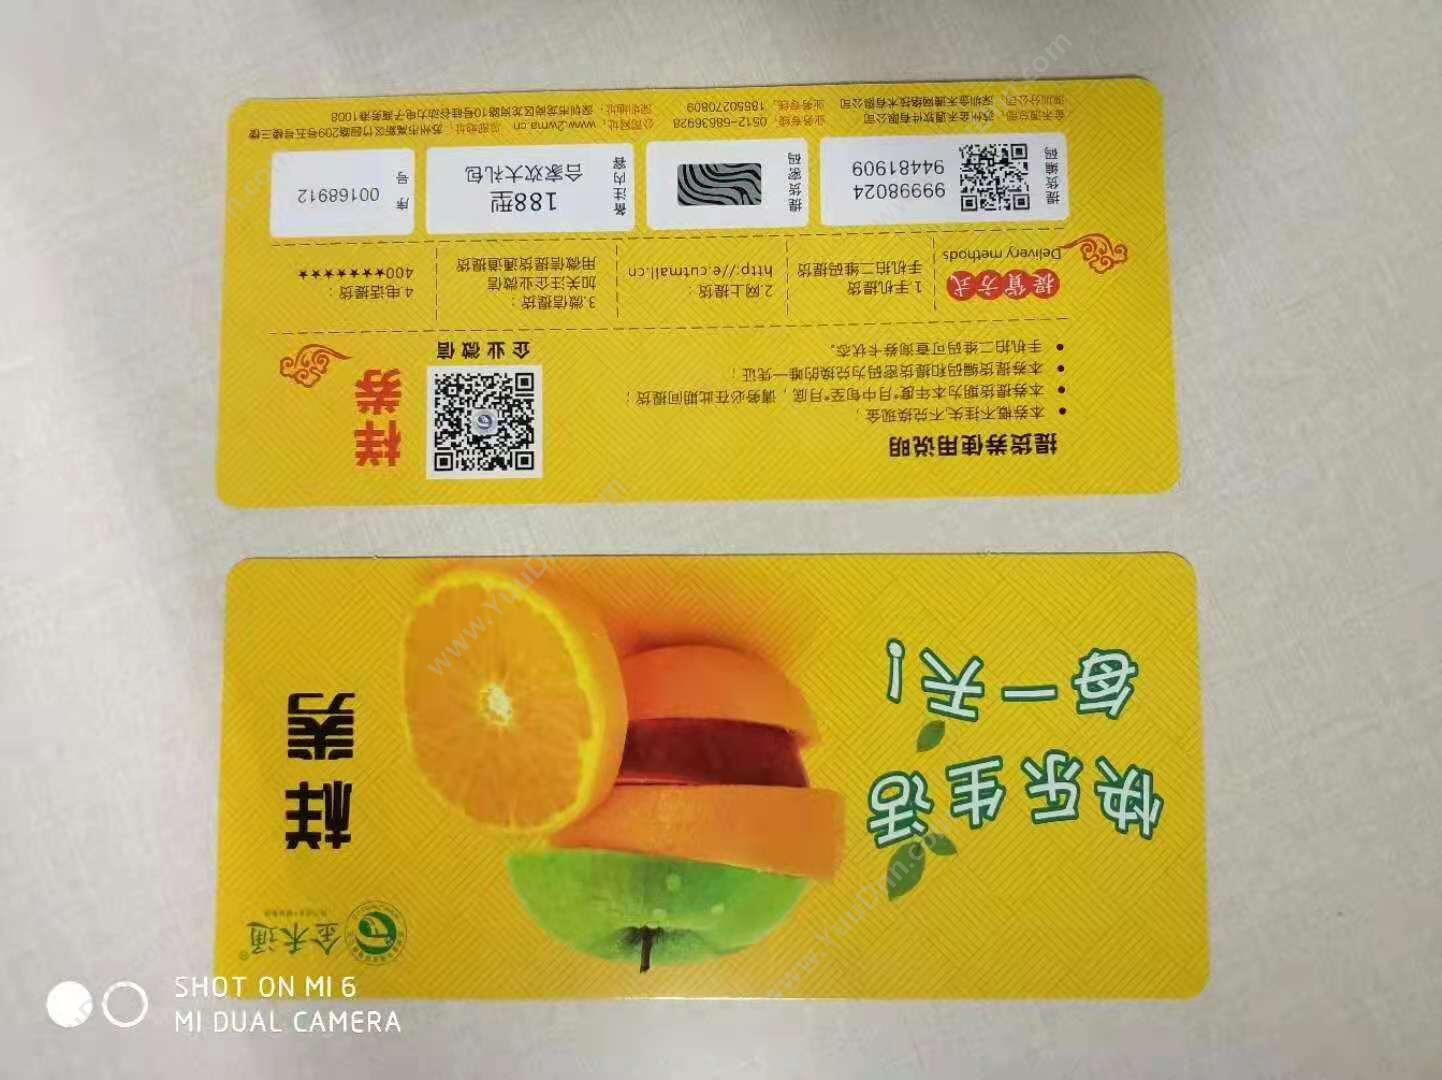 苏州金禾通软件 扫码提货卡 公众号微信提货兑换系统 卡券管理